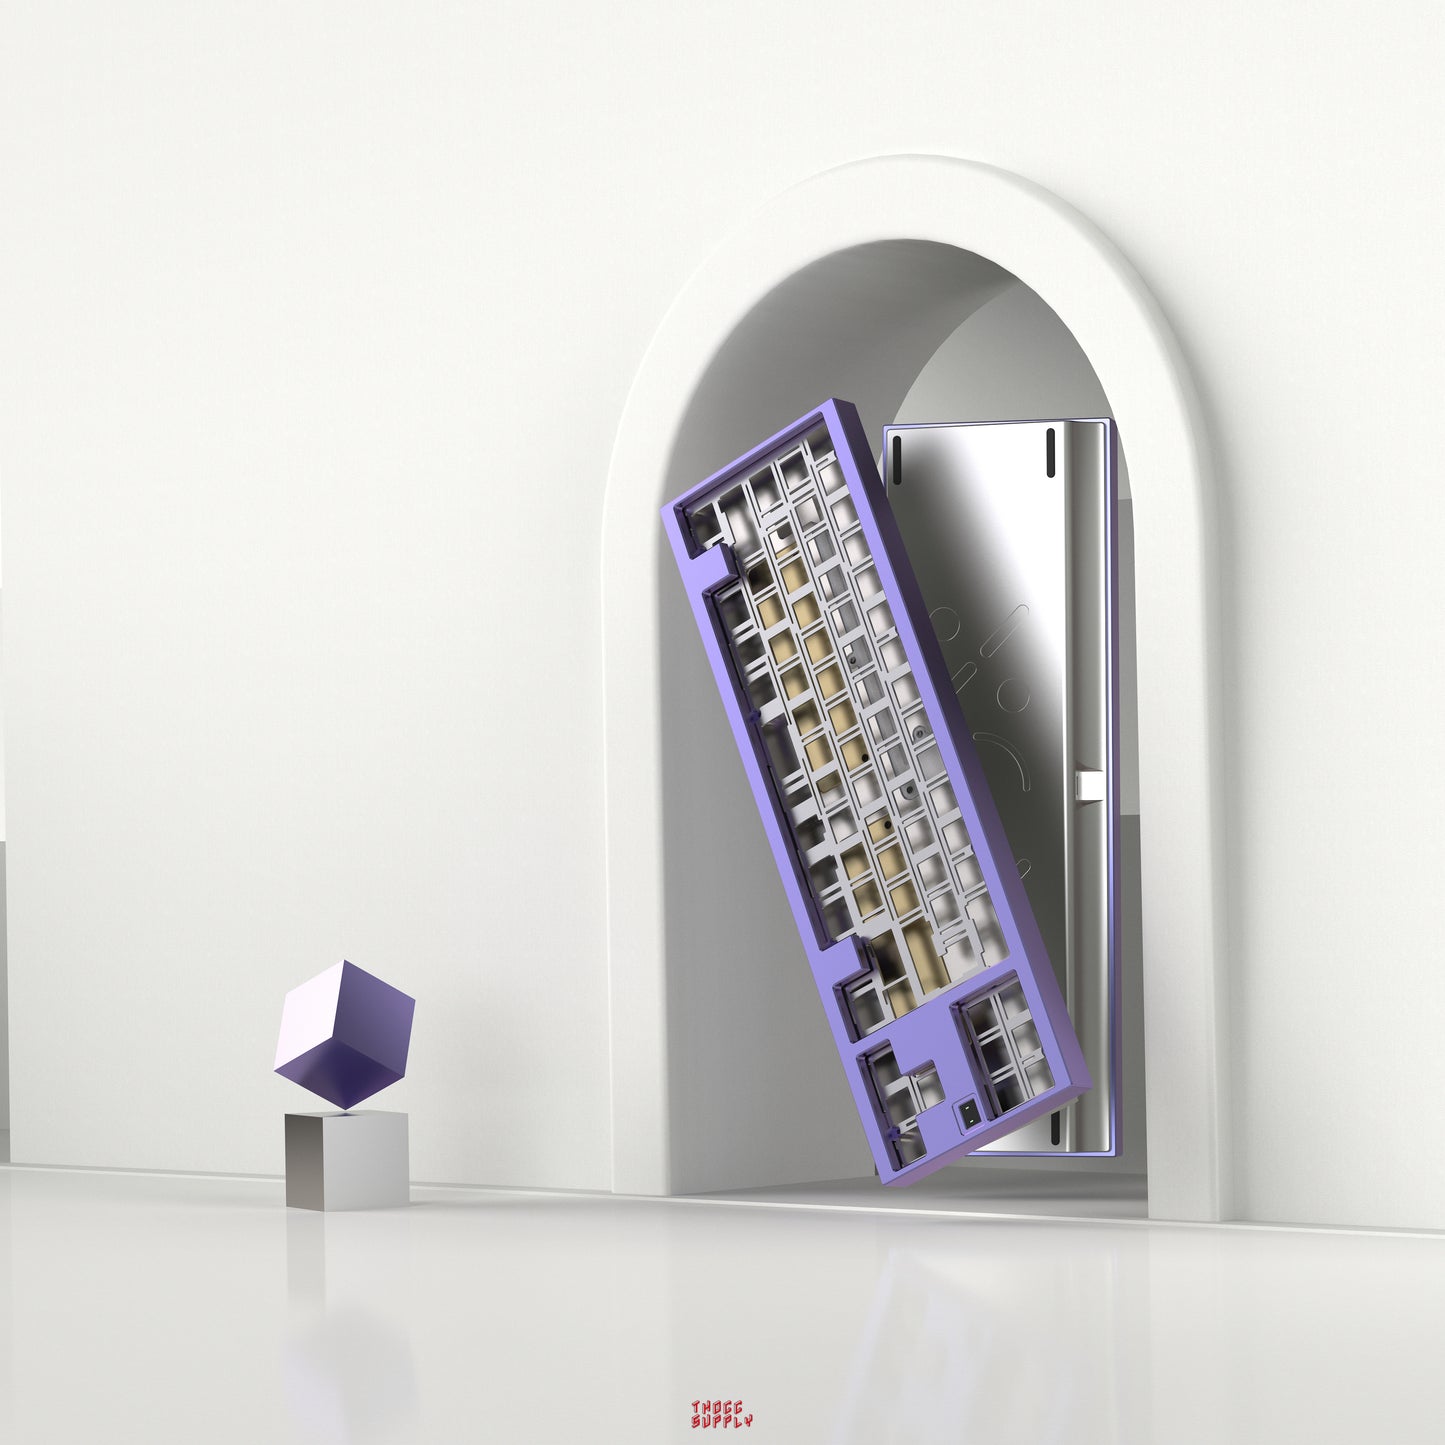 
                  
                    (Group Buy) XOX70 FRL-TKL Keyboard Kit
                  
                